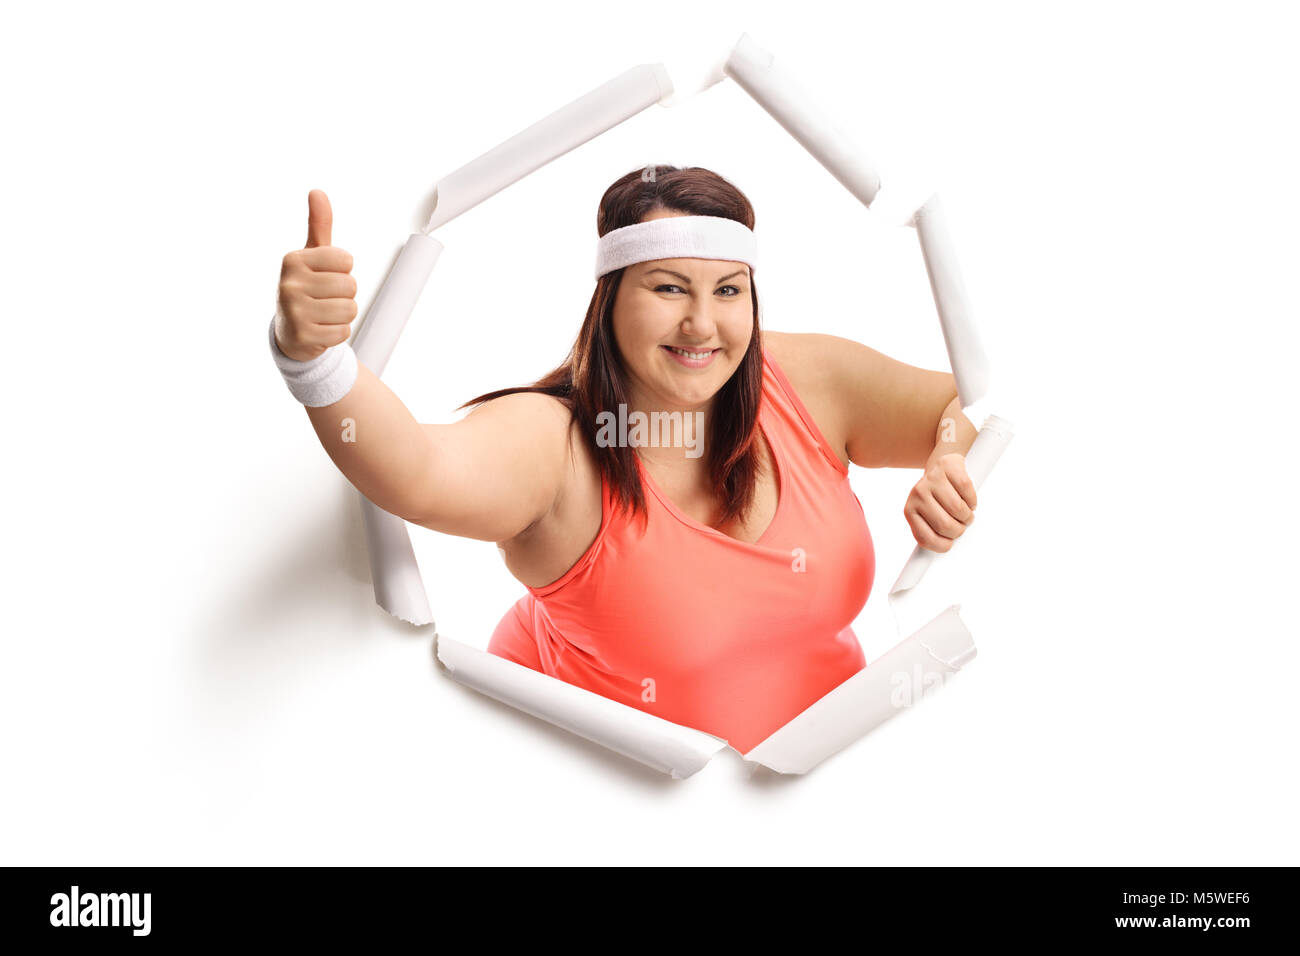 Übergewichtige Frau brechen durch Papier und ein "Daumen hoch" Geste Stockfoto